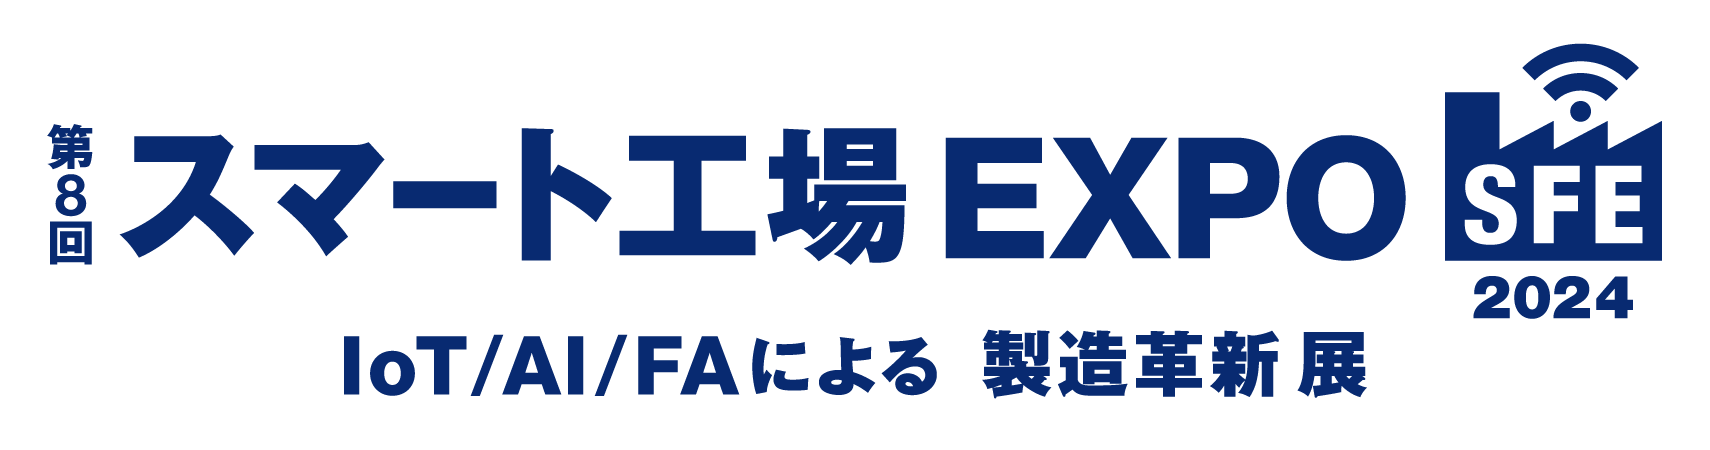 第8回スマート工場 EXPOのロゴ